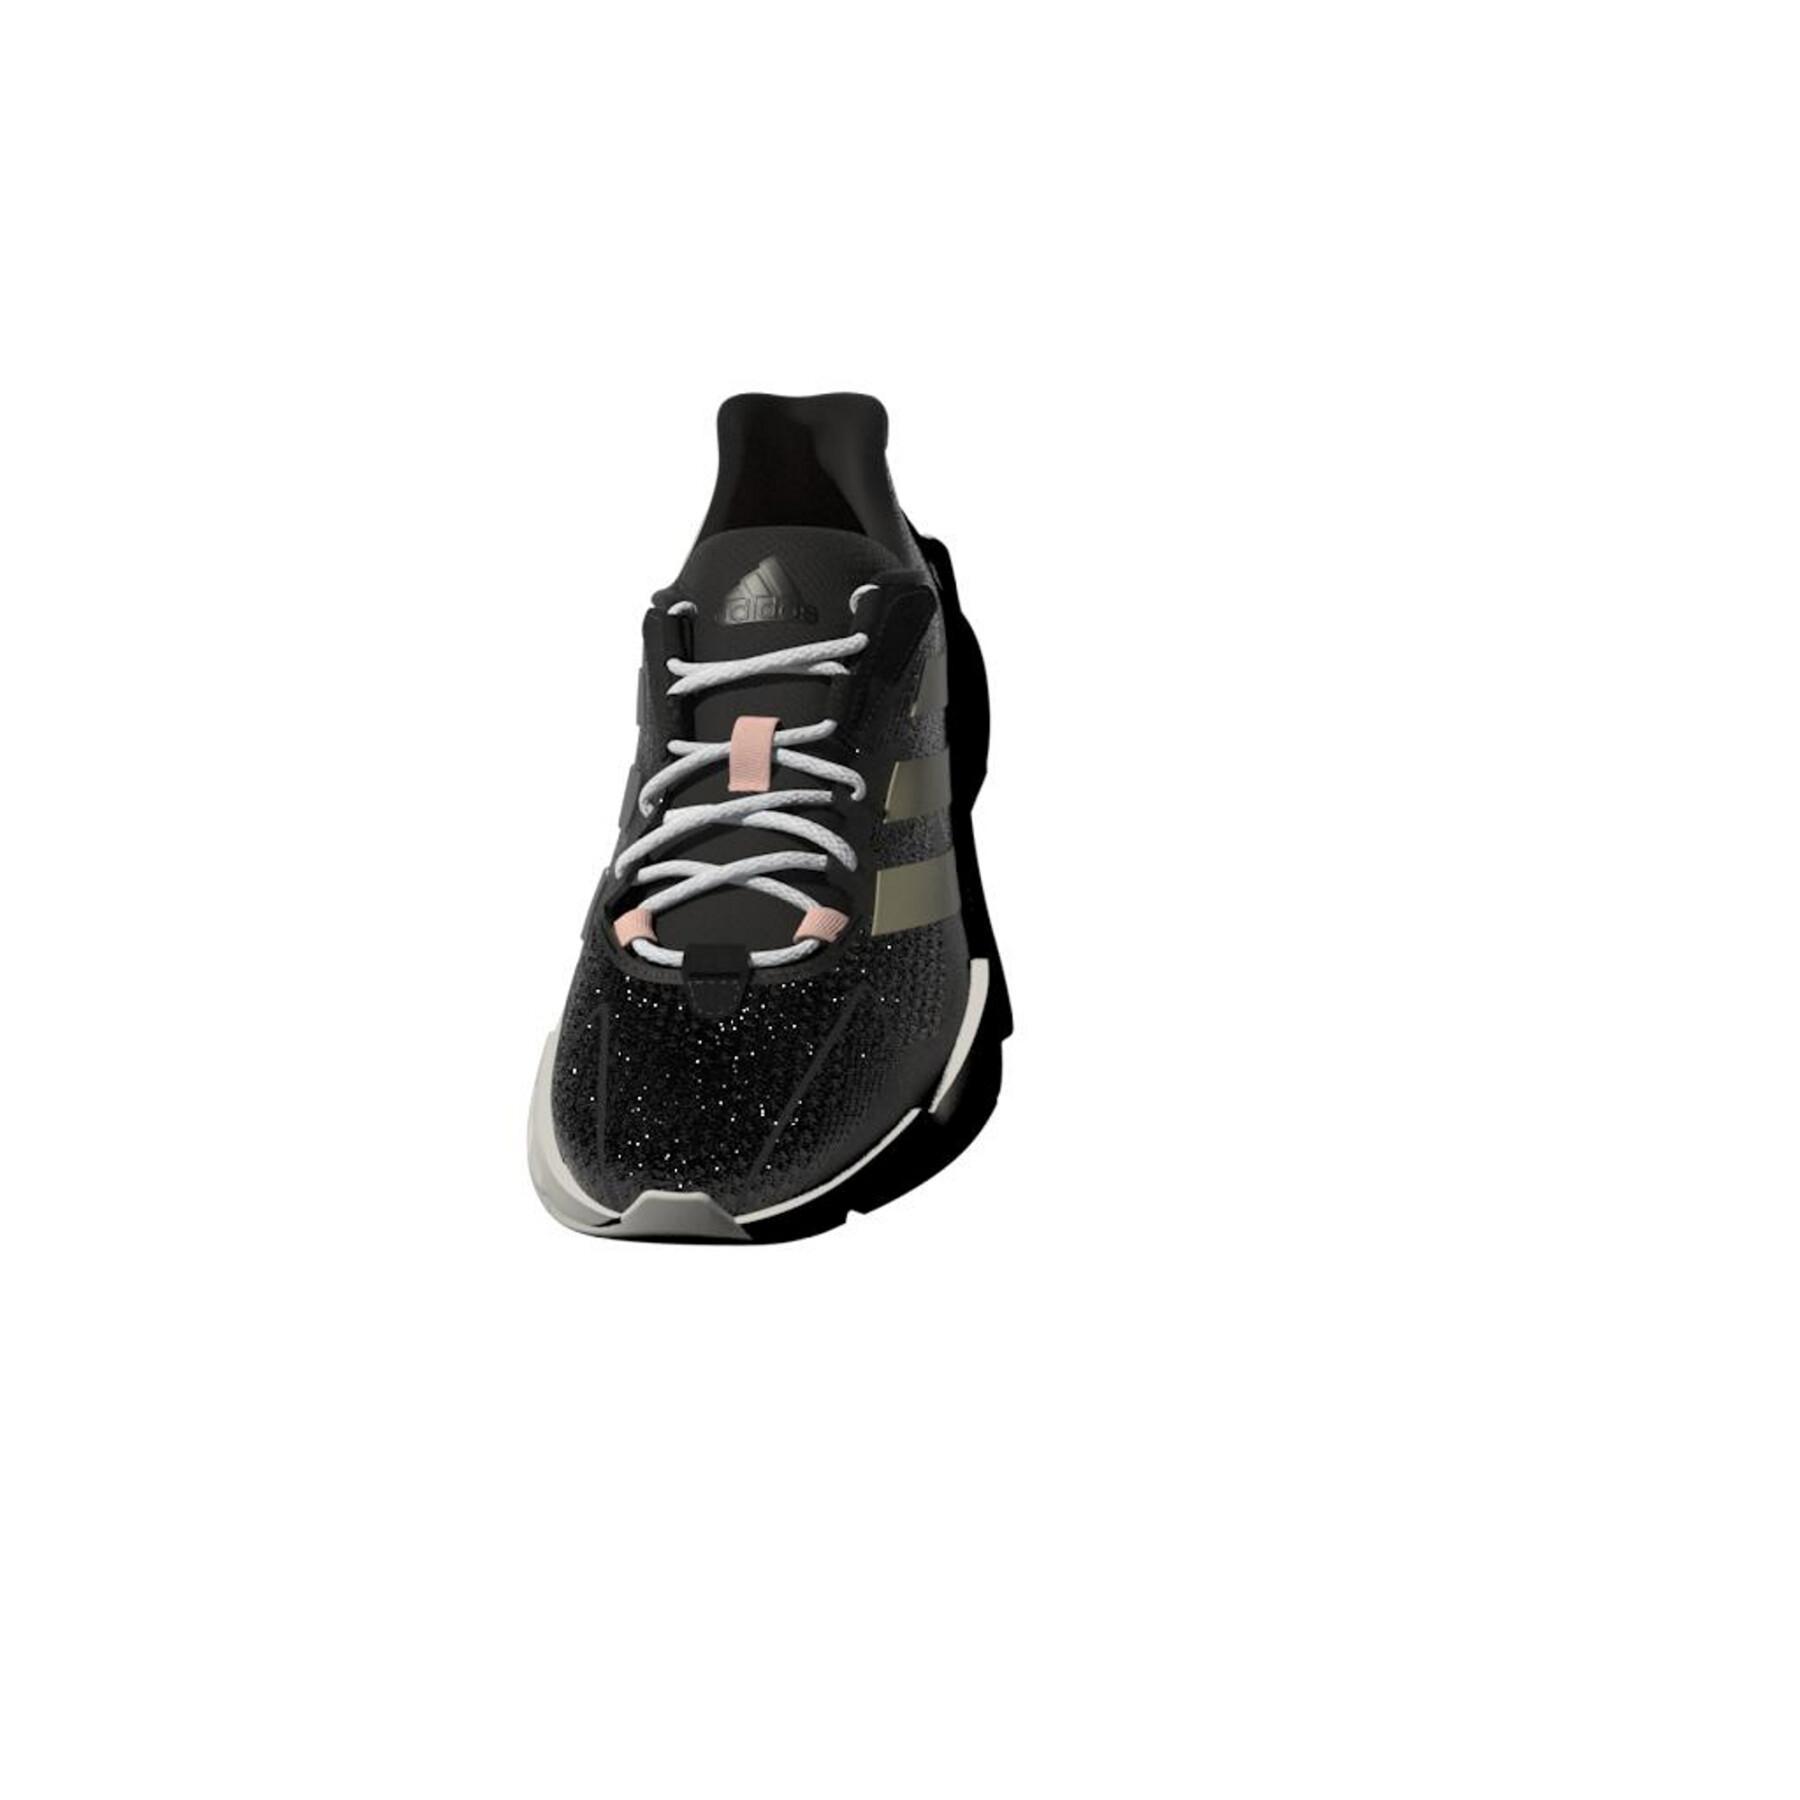 Löparskor för kvinnor adidas X9000L4